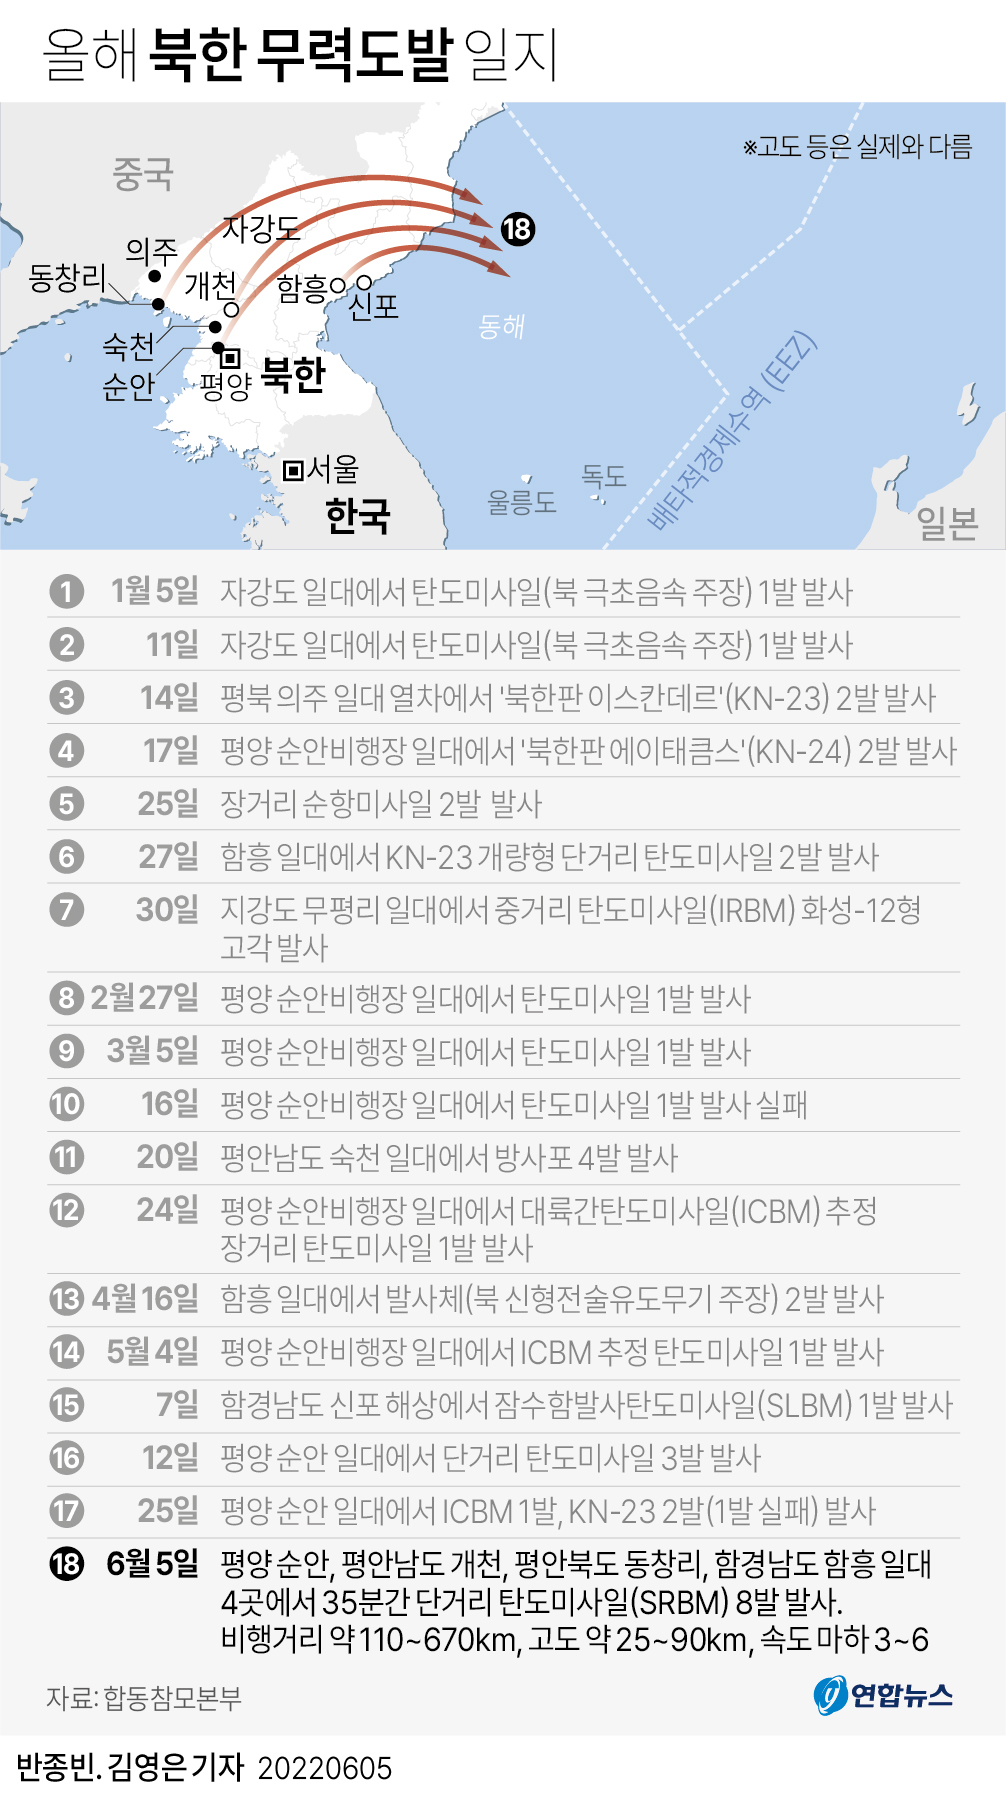 [그래픽] 올해 북한 무력도발 일지